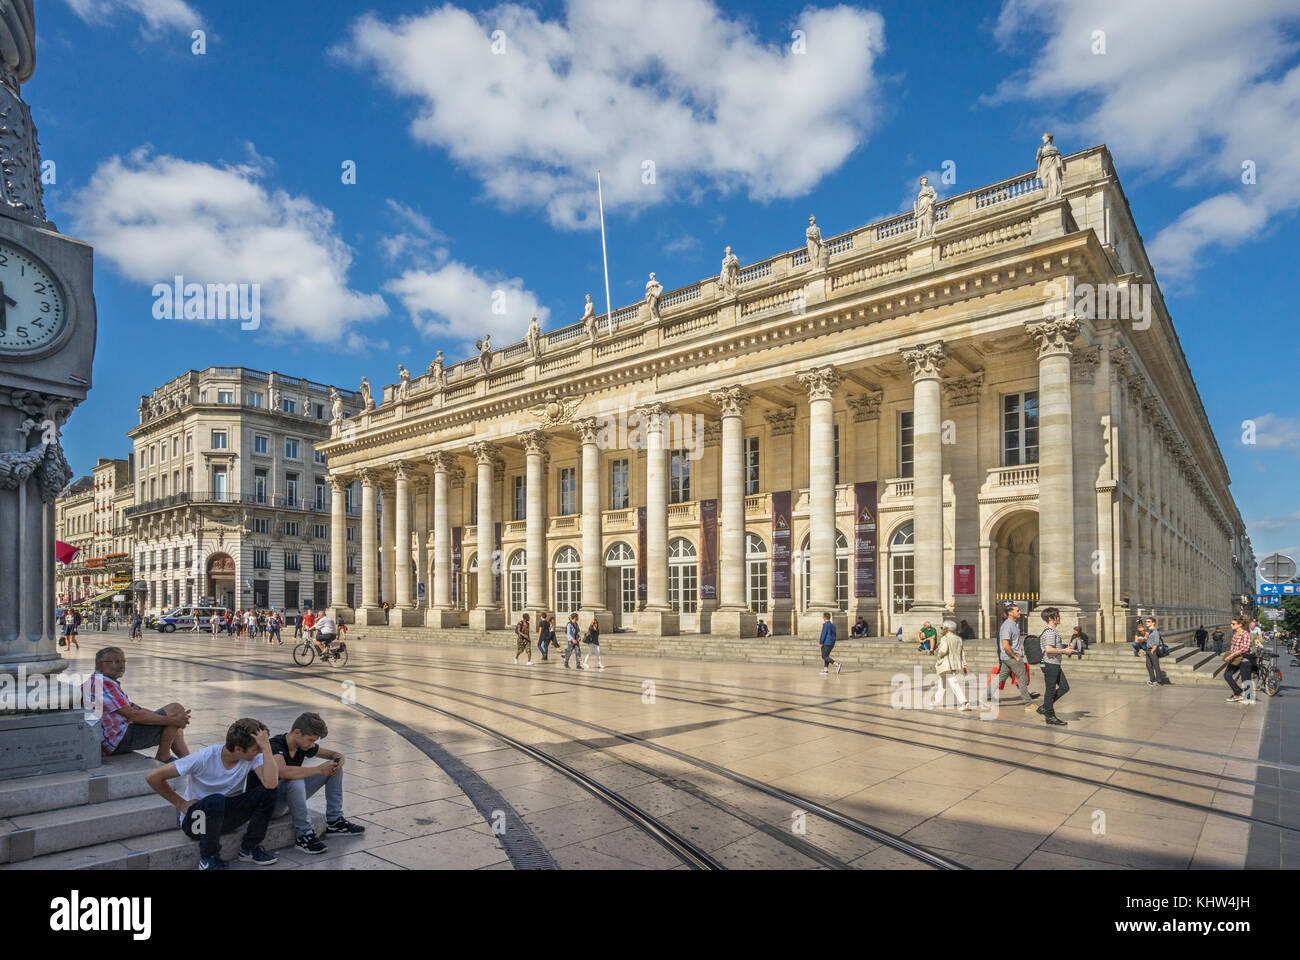 France, Gironde department, Bordeaux, Place de la Comédie, view of the Grand Théâtre de Bordeaux Stock Photo